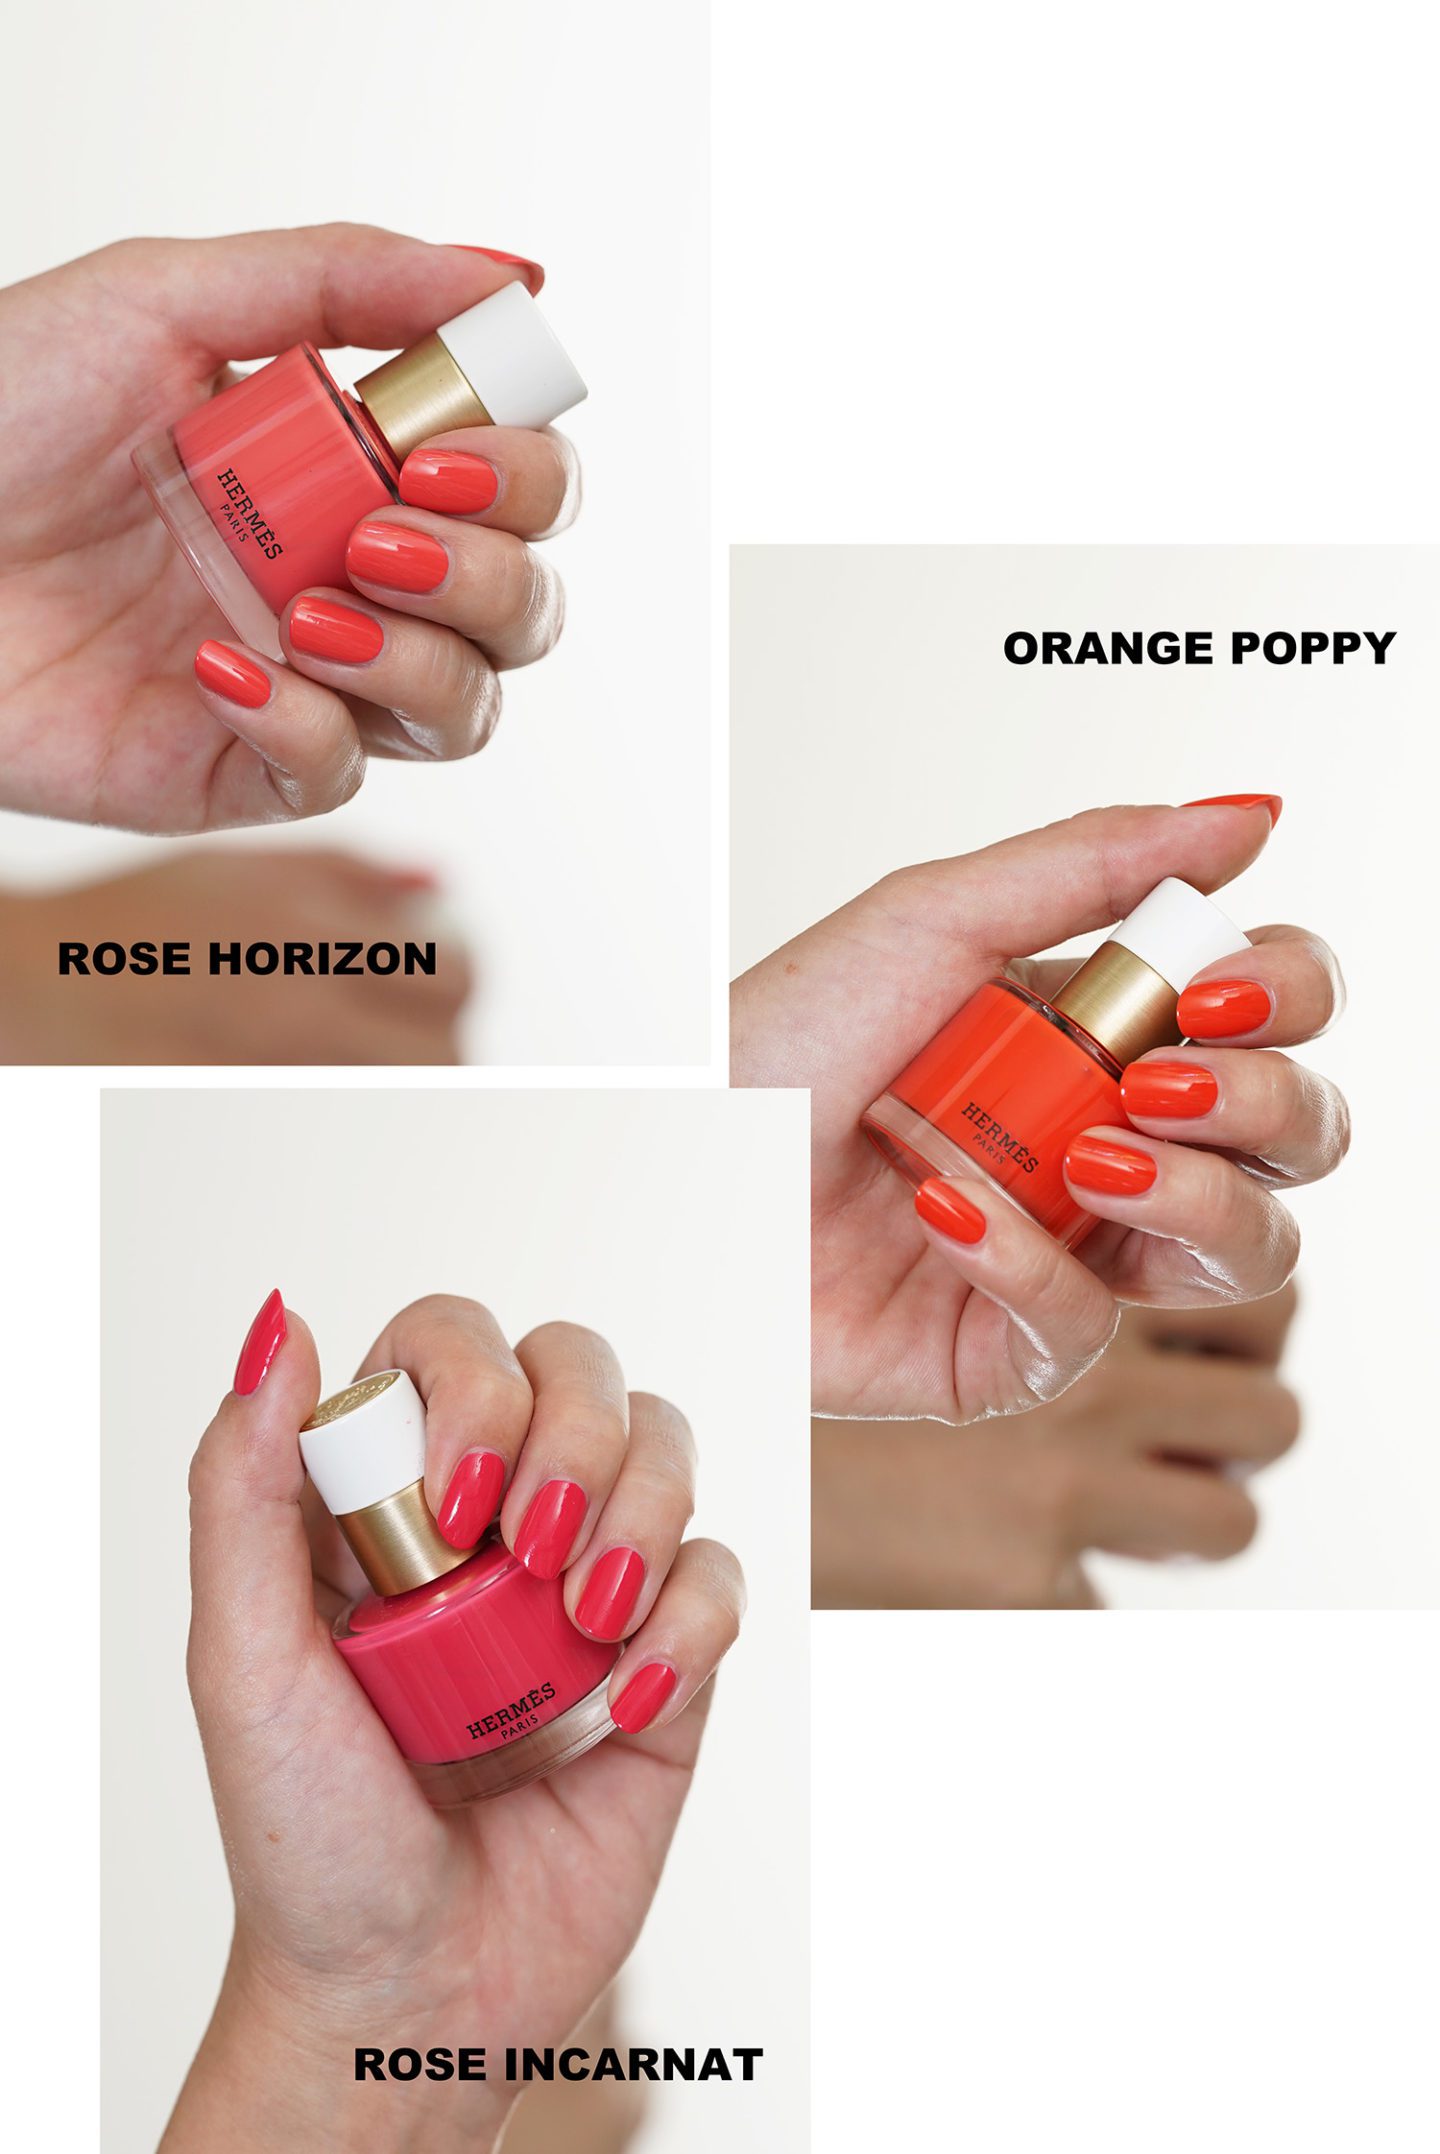 Hermes Nail Polish Rose Horizon, Orange Poppy and Rose Incarnat